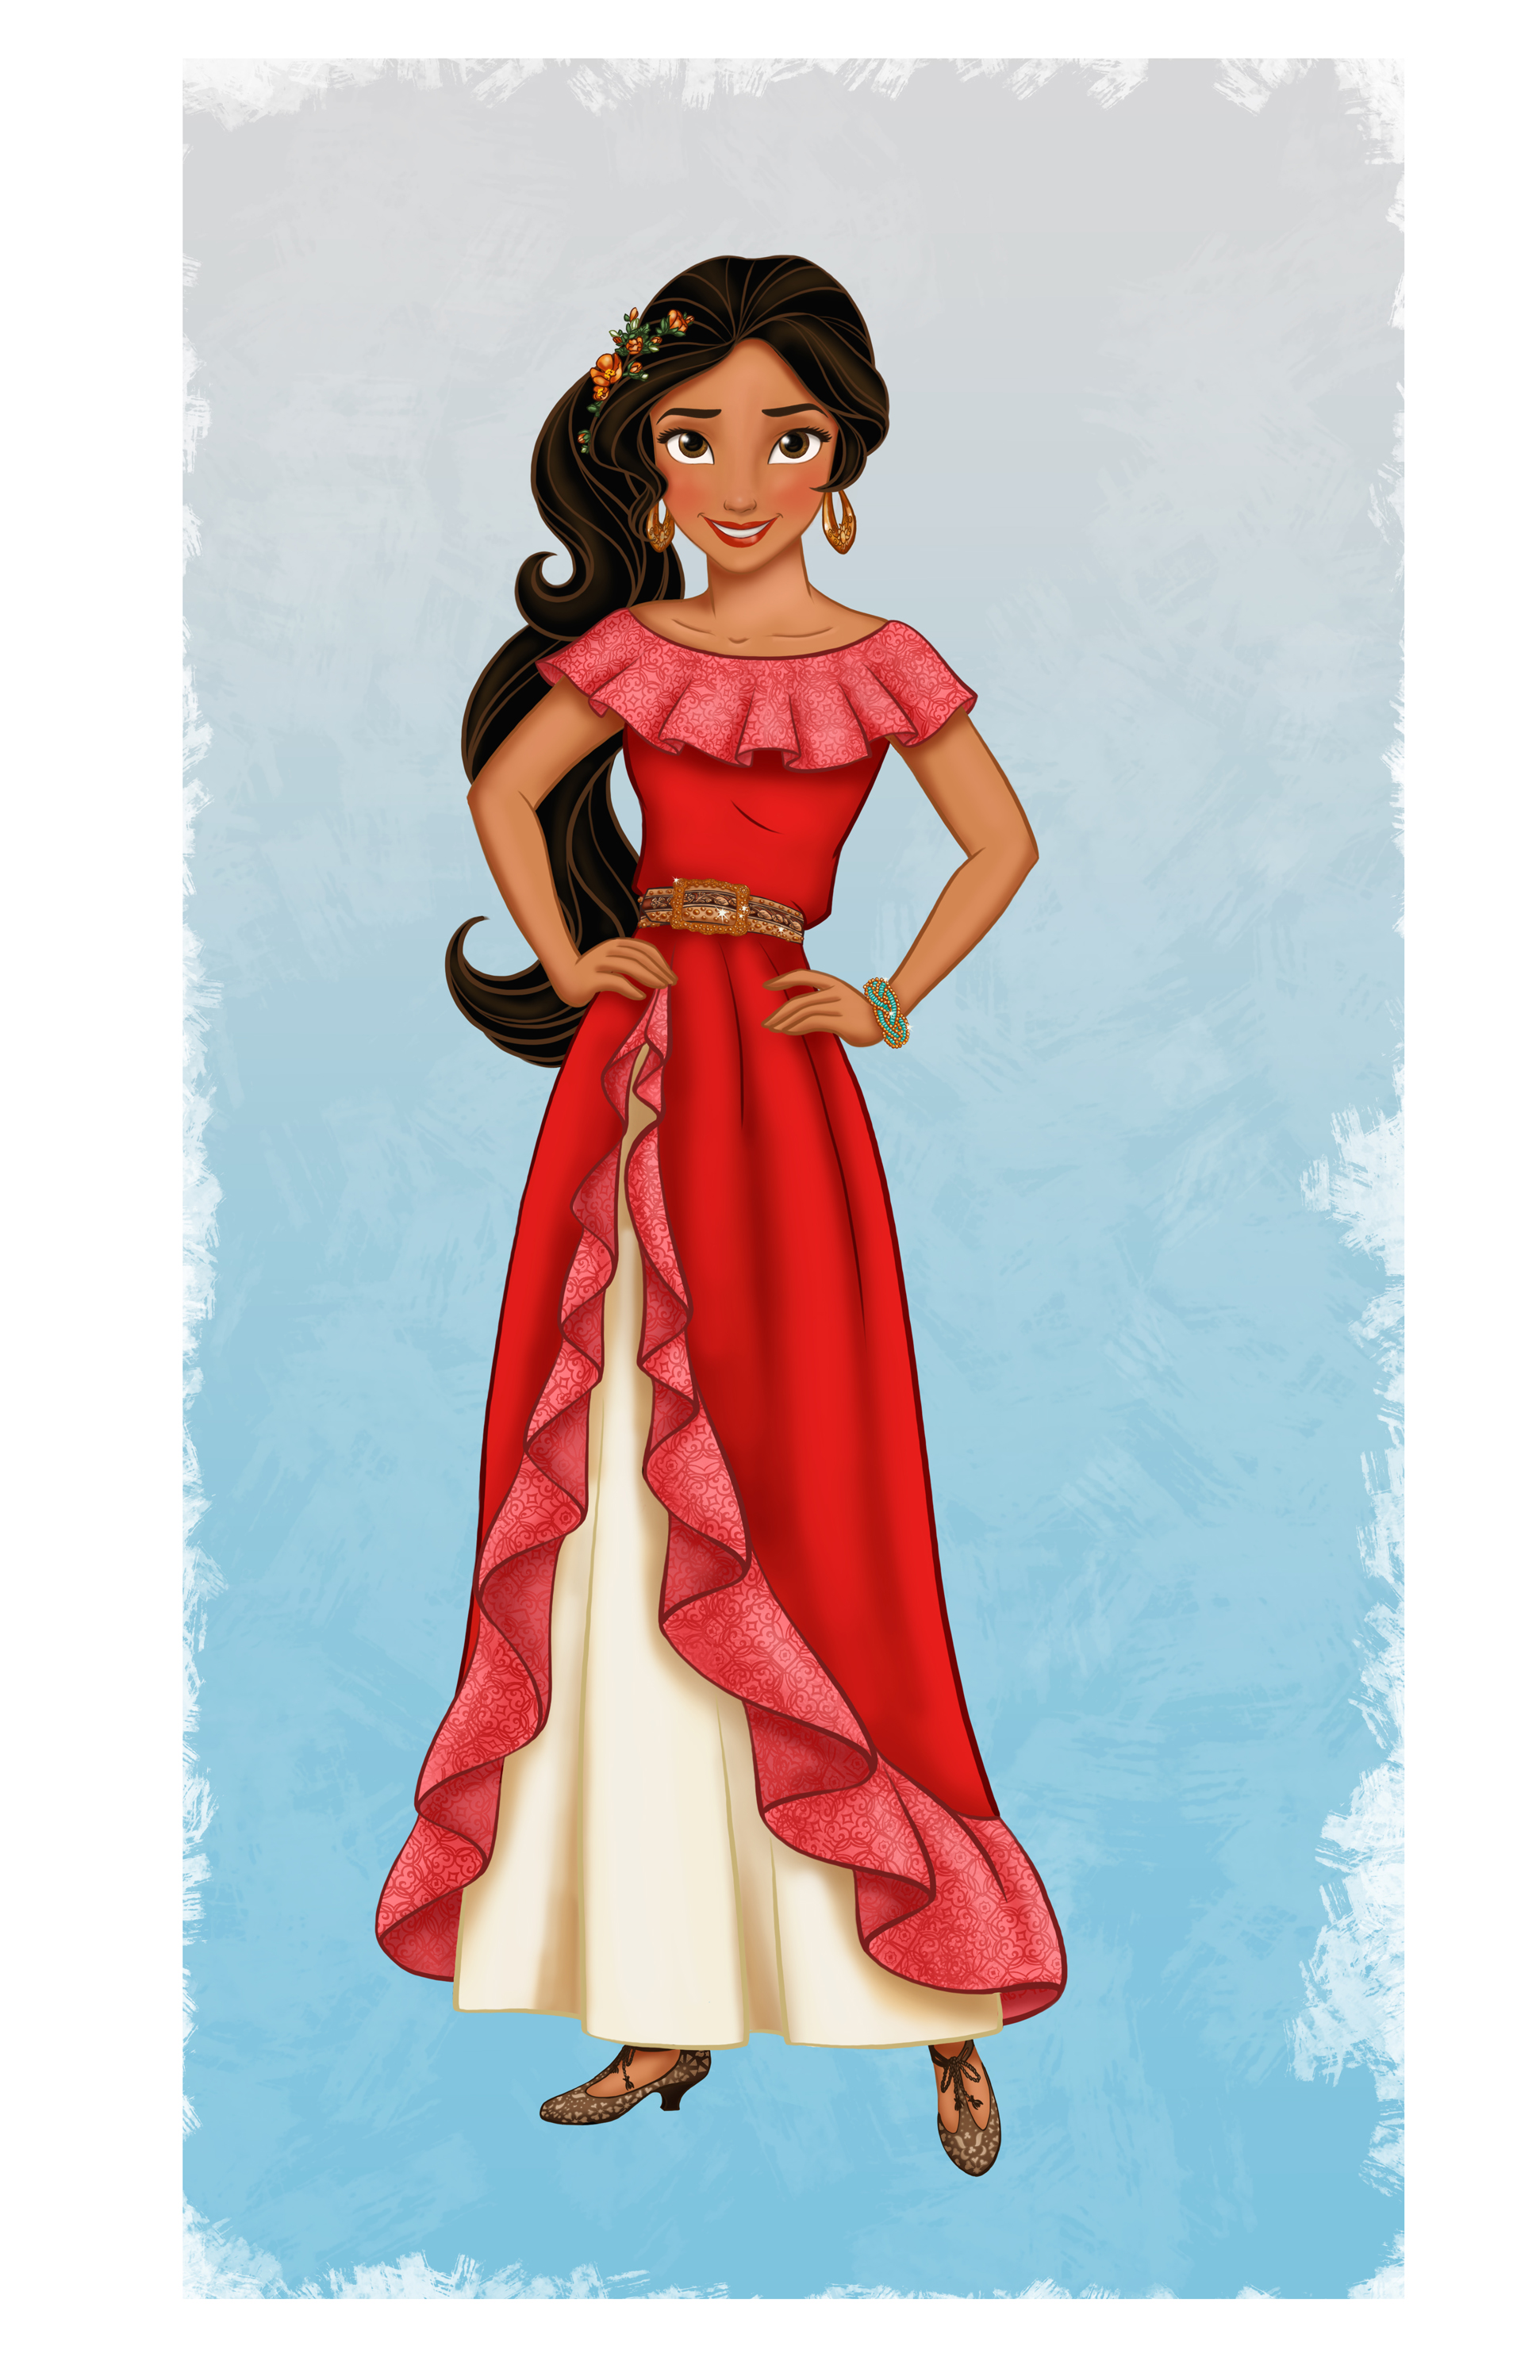 Princess Elena of Avalor (Disney Junior)